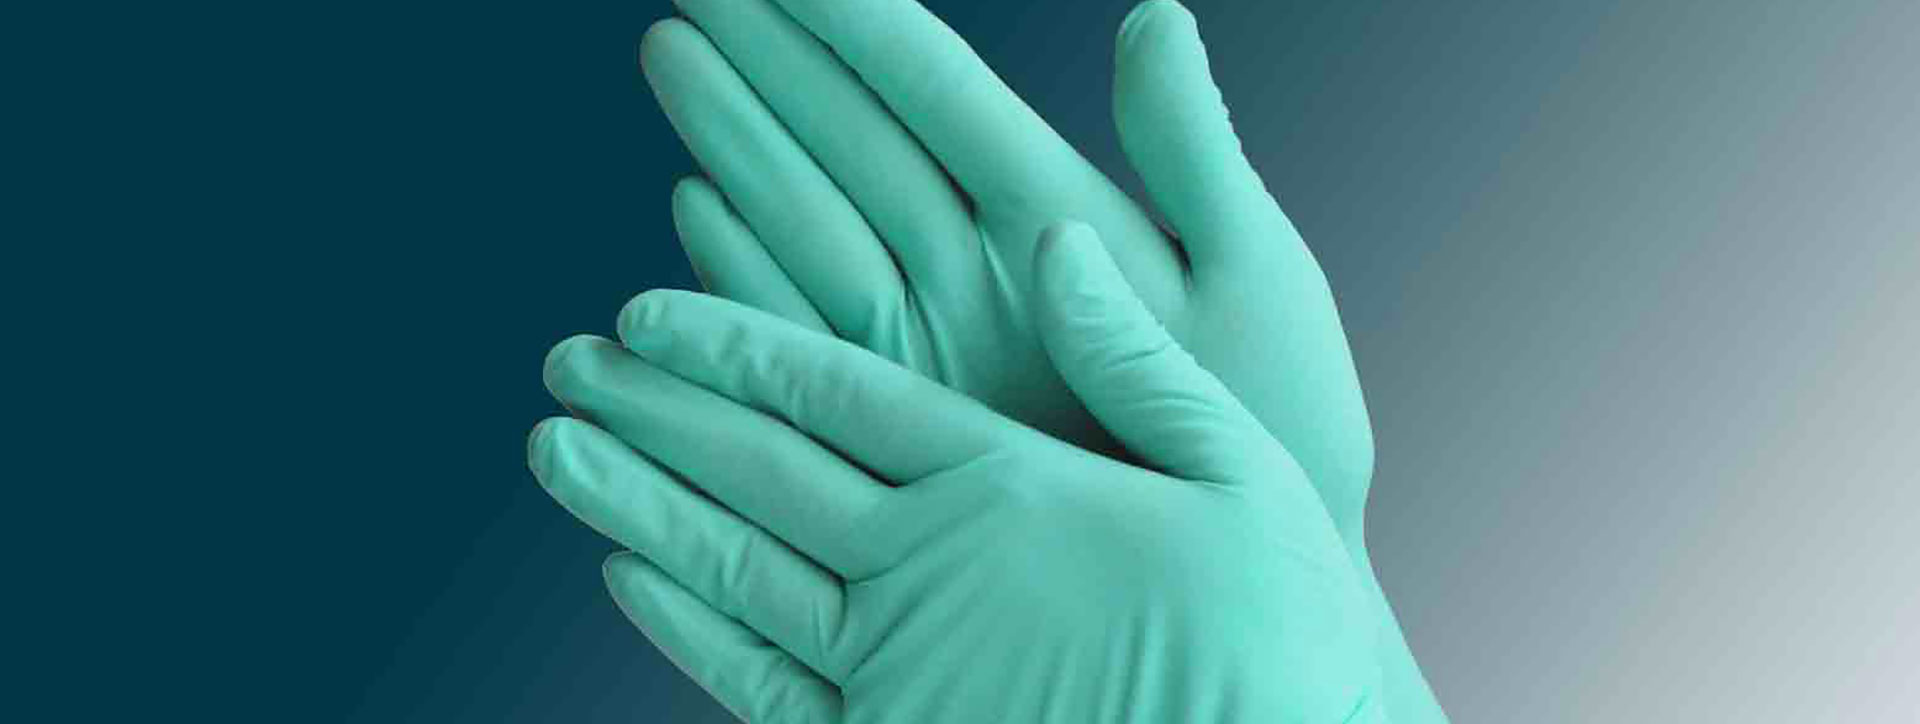 ASTM D5250-19 Especificación estándar para guantes de poli (cloruro de vinilo) para aplicaciones médicas